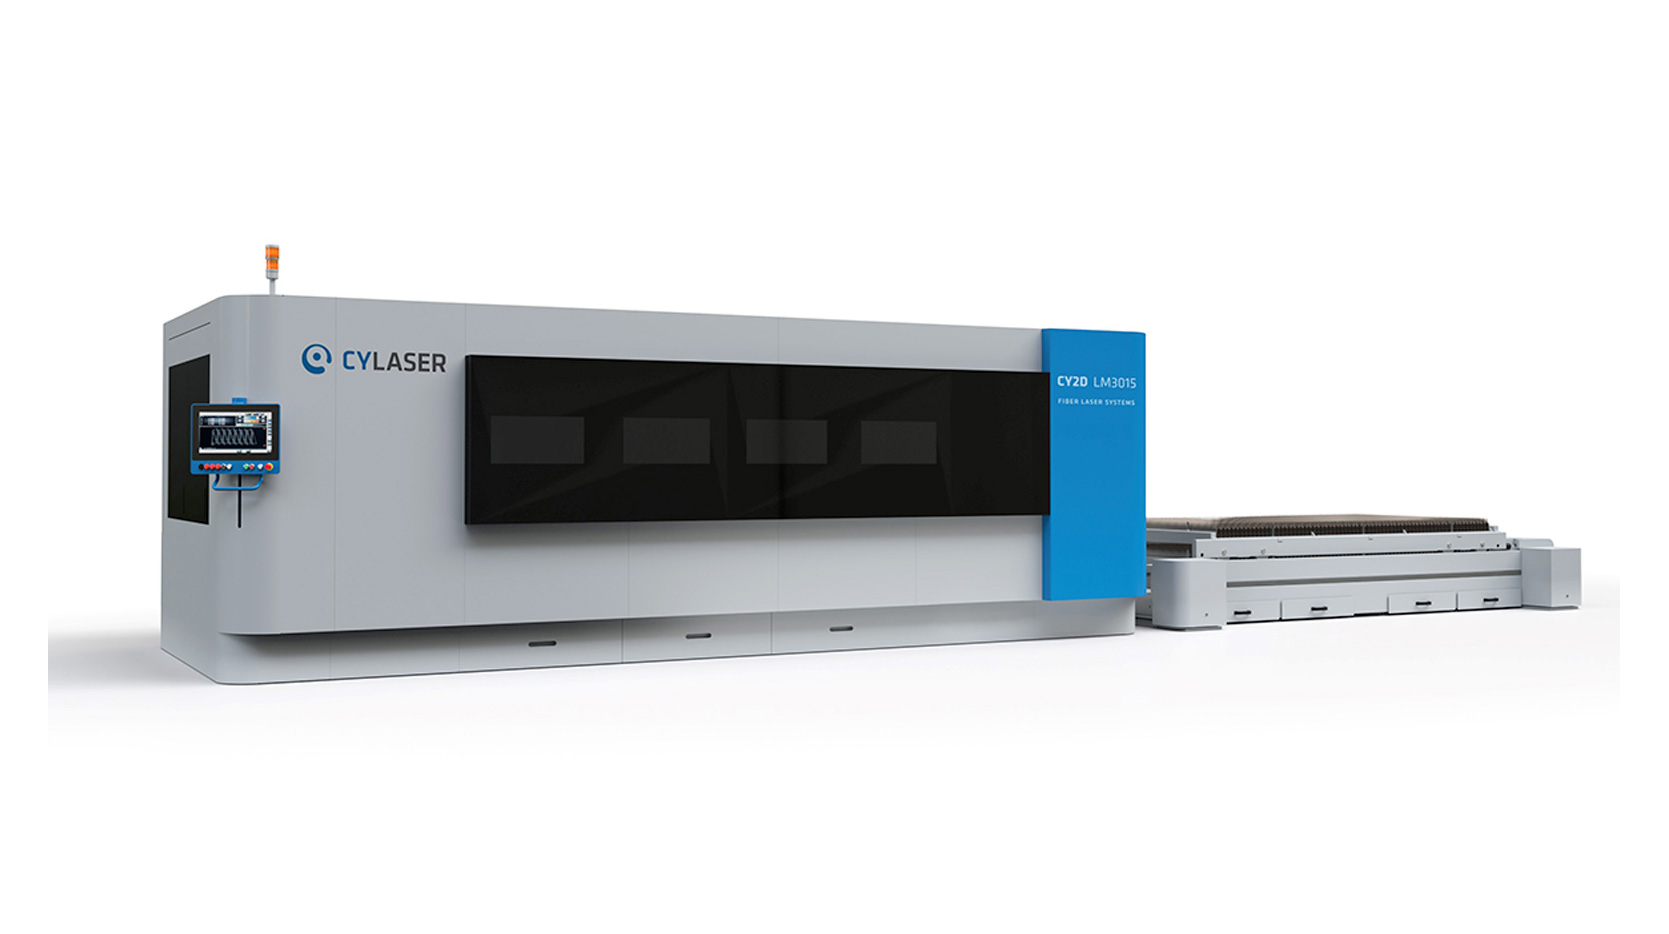 CY2D LM3015 Cy-laser fiber laser system